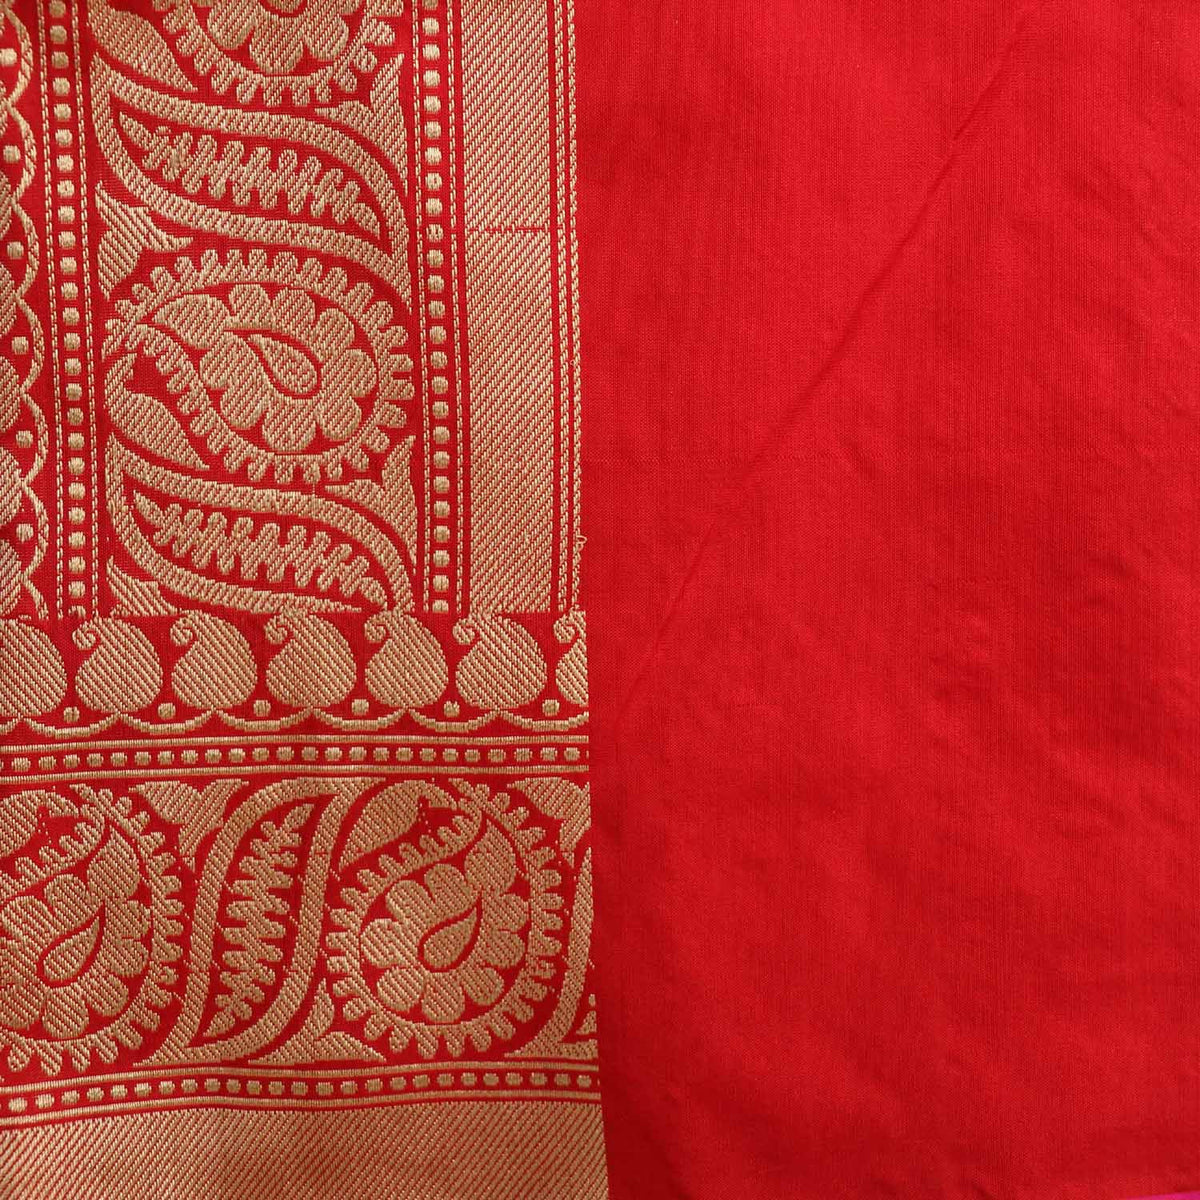 Red Pure Katan Silk Banarasi Handloom Saree - Tilfi - 5